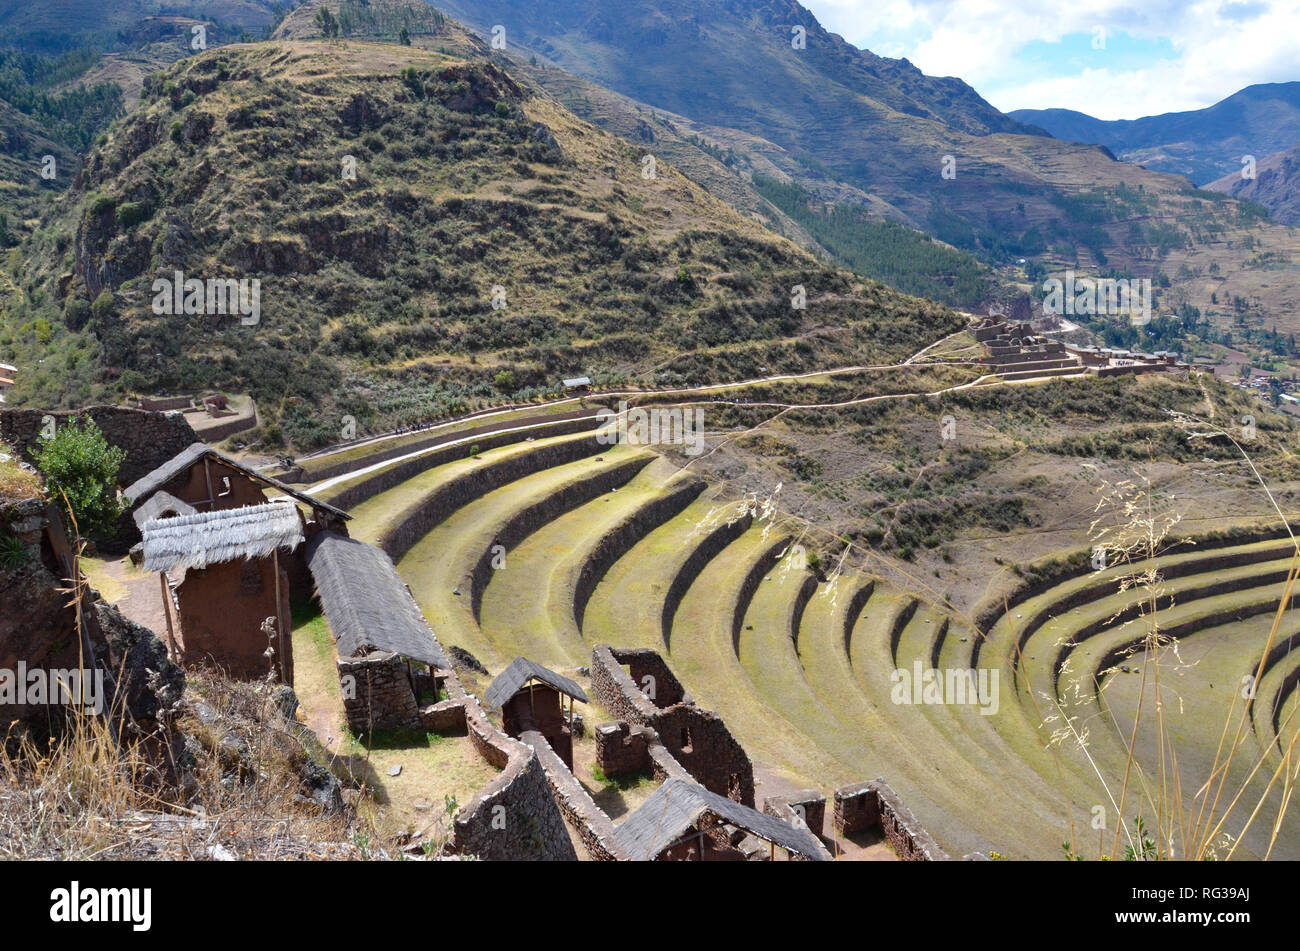 PISAQ / PERU, August 16, 2018: Top view of the terraces in the ruins of Pisaq near Cusco. Stock Photo